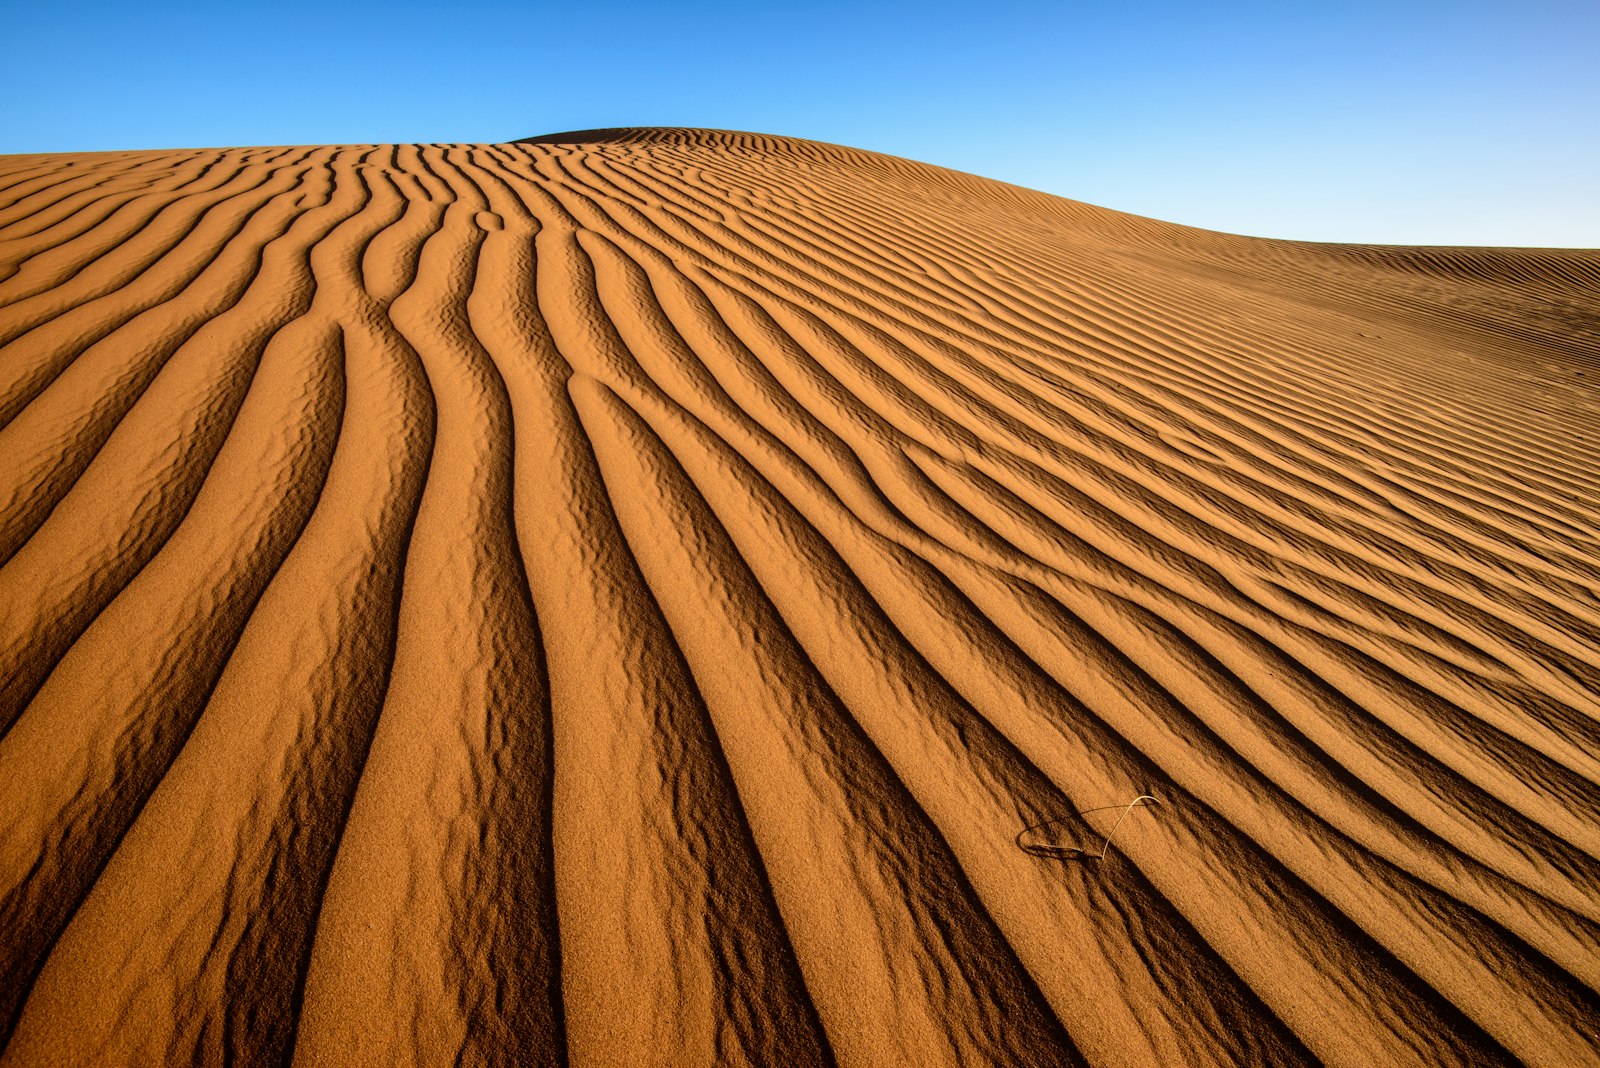 Nikon AF-S Nikkor 16-35mm F4G ED VR sample photo. Desert during daytime photography